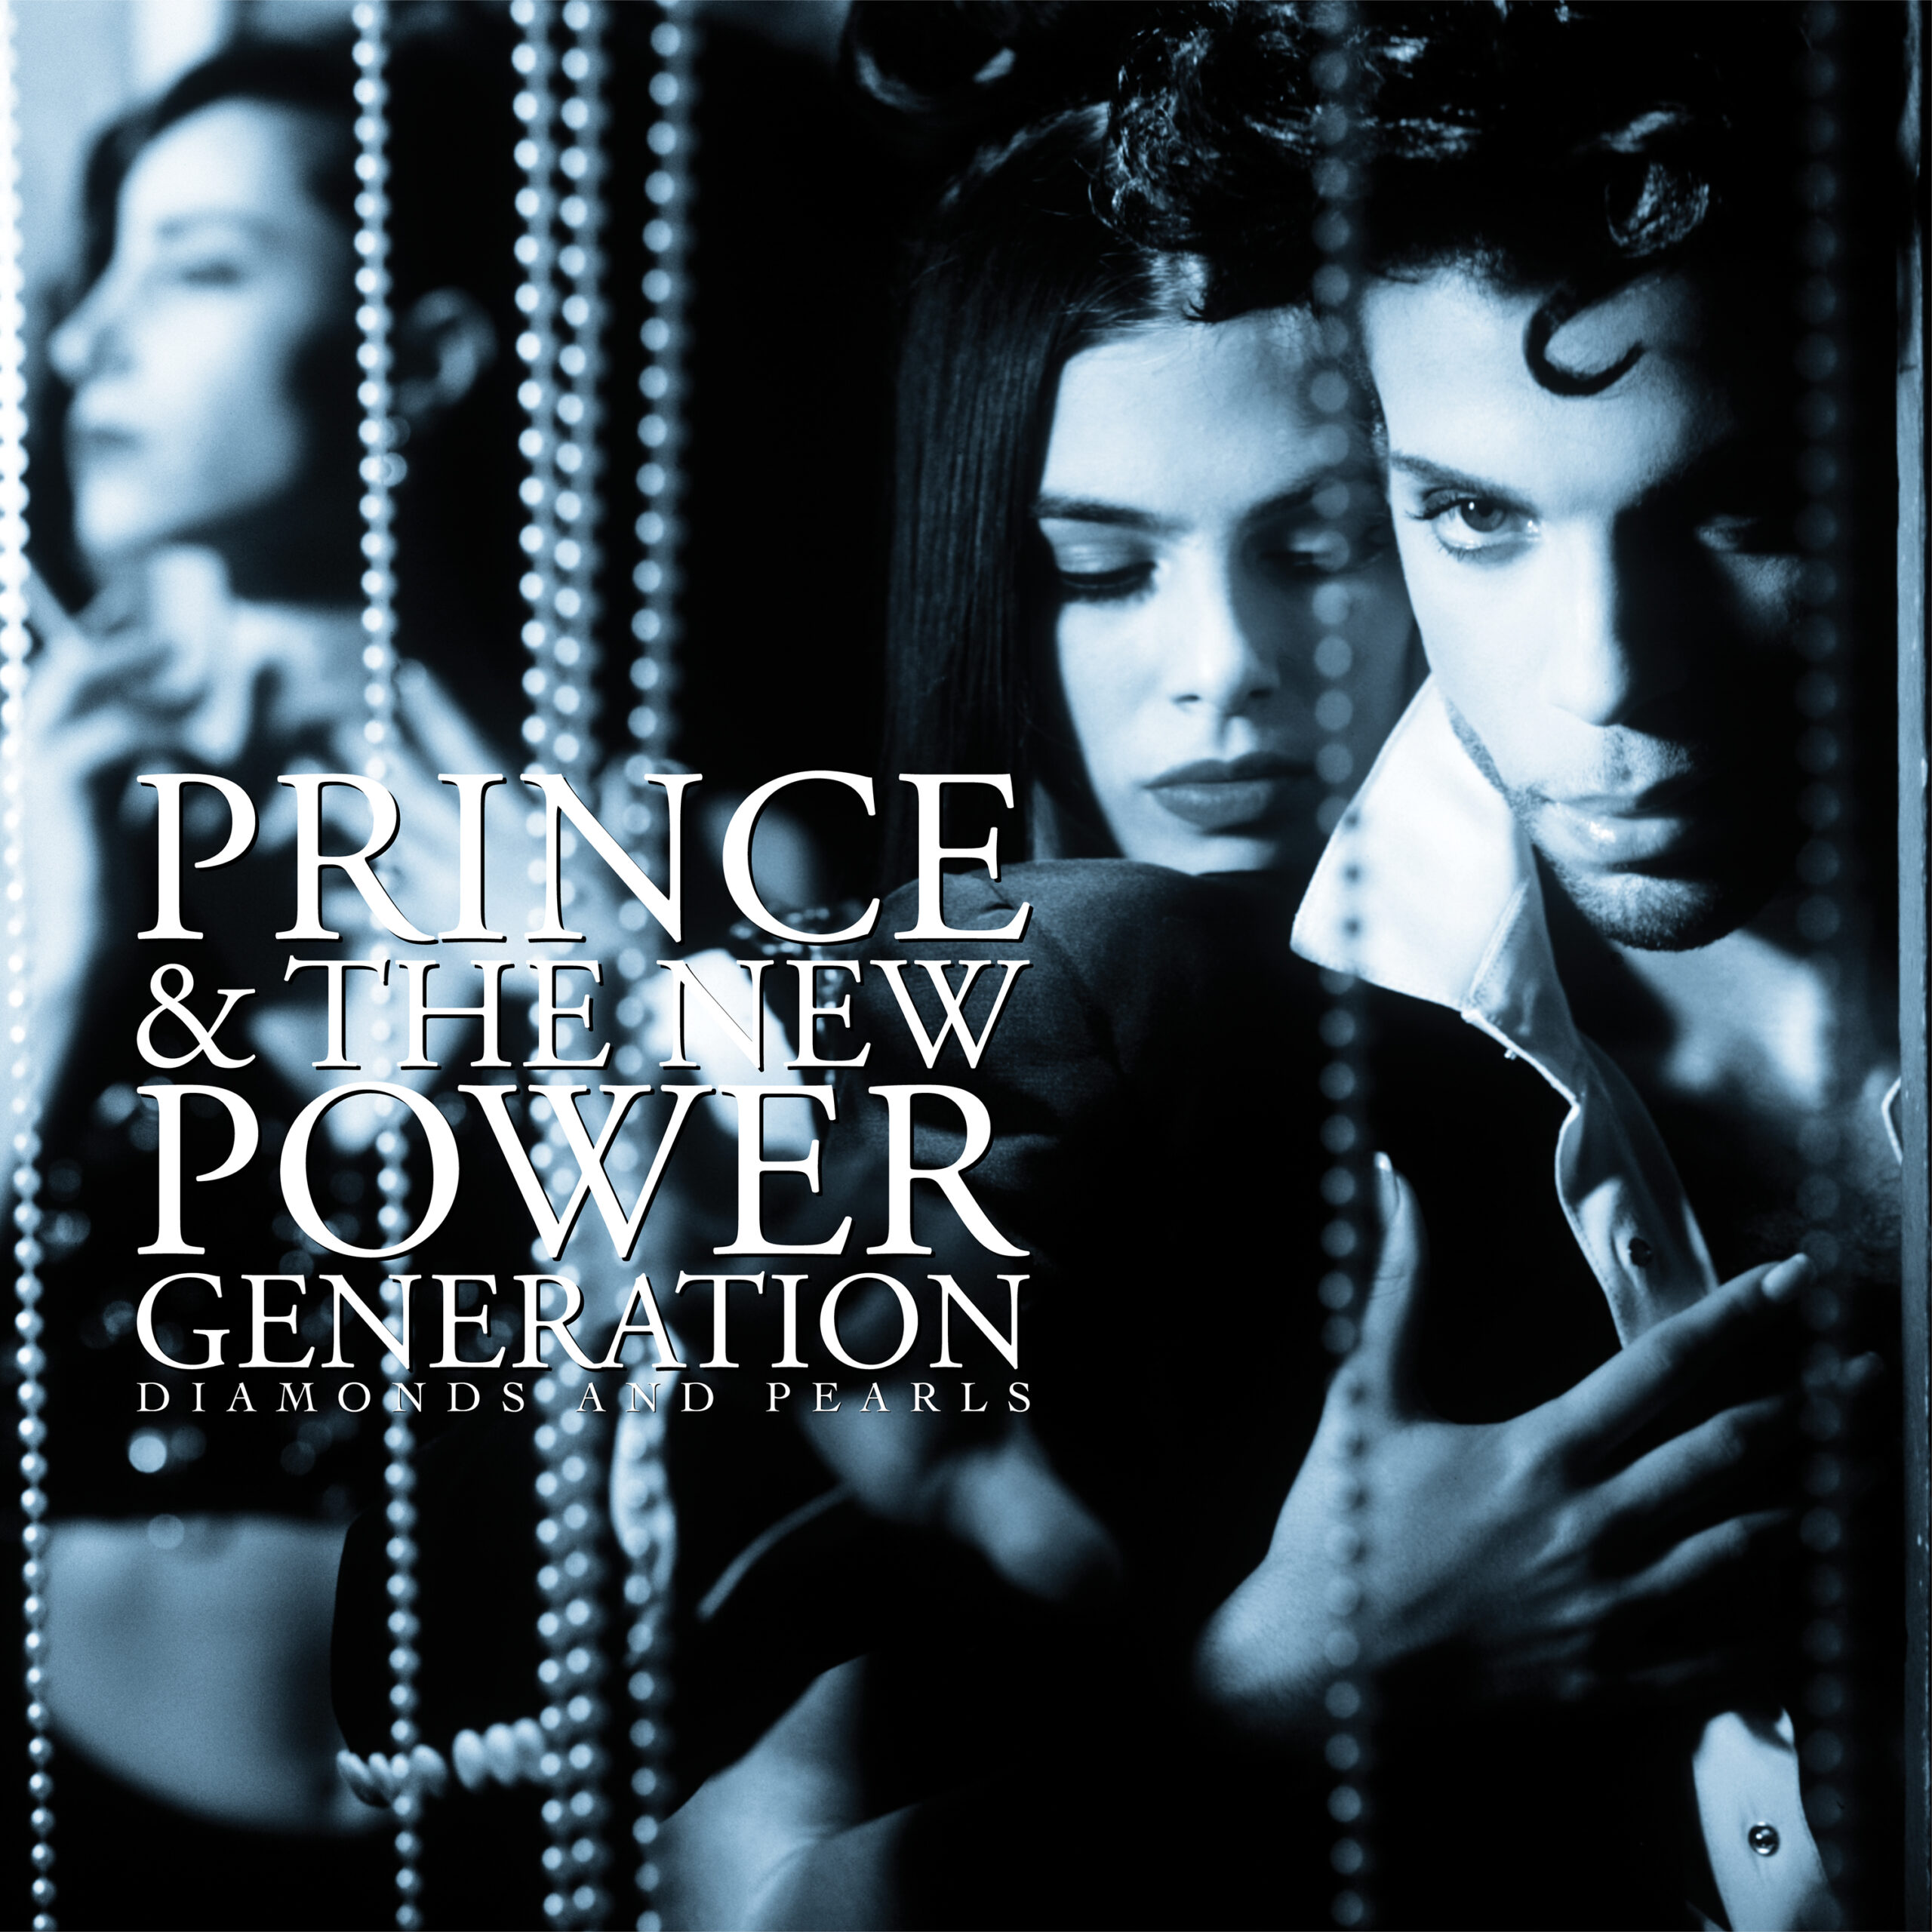 Reizdanje Princeovog albuma „Diamonds And Pearls" donosi mnogo nikada objavljenog materijala